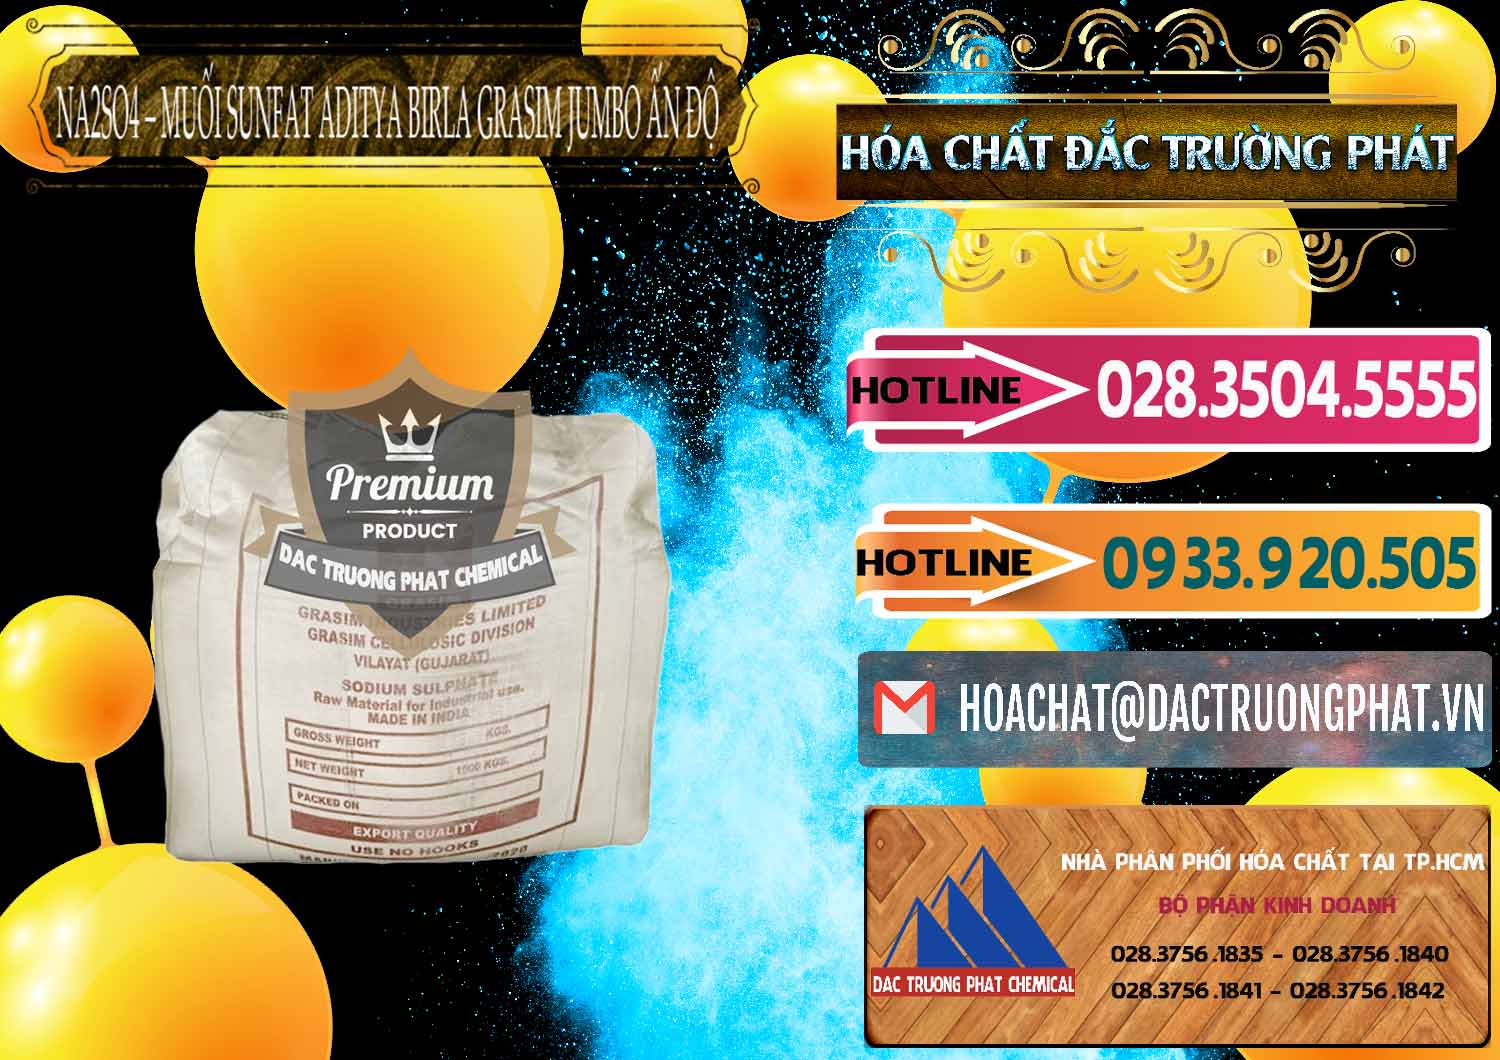 Công ty cung cấp - bán Sodium Sulphate - Muối Sunfat Na2SO4 Jumbo Bành Aditya Birla Grasim Ấn Độ India - 0357 - Công ty chuyên phân phối ( nhập khẩu ) hóa chất tại TP.HCM - dactruongphat.vn